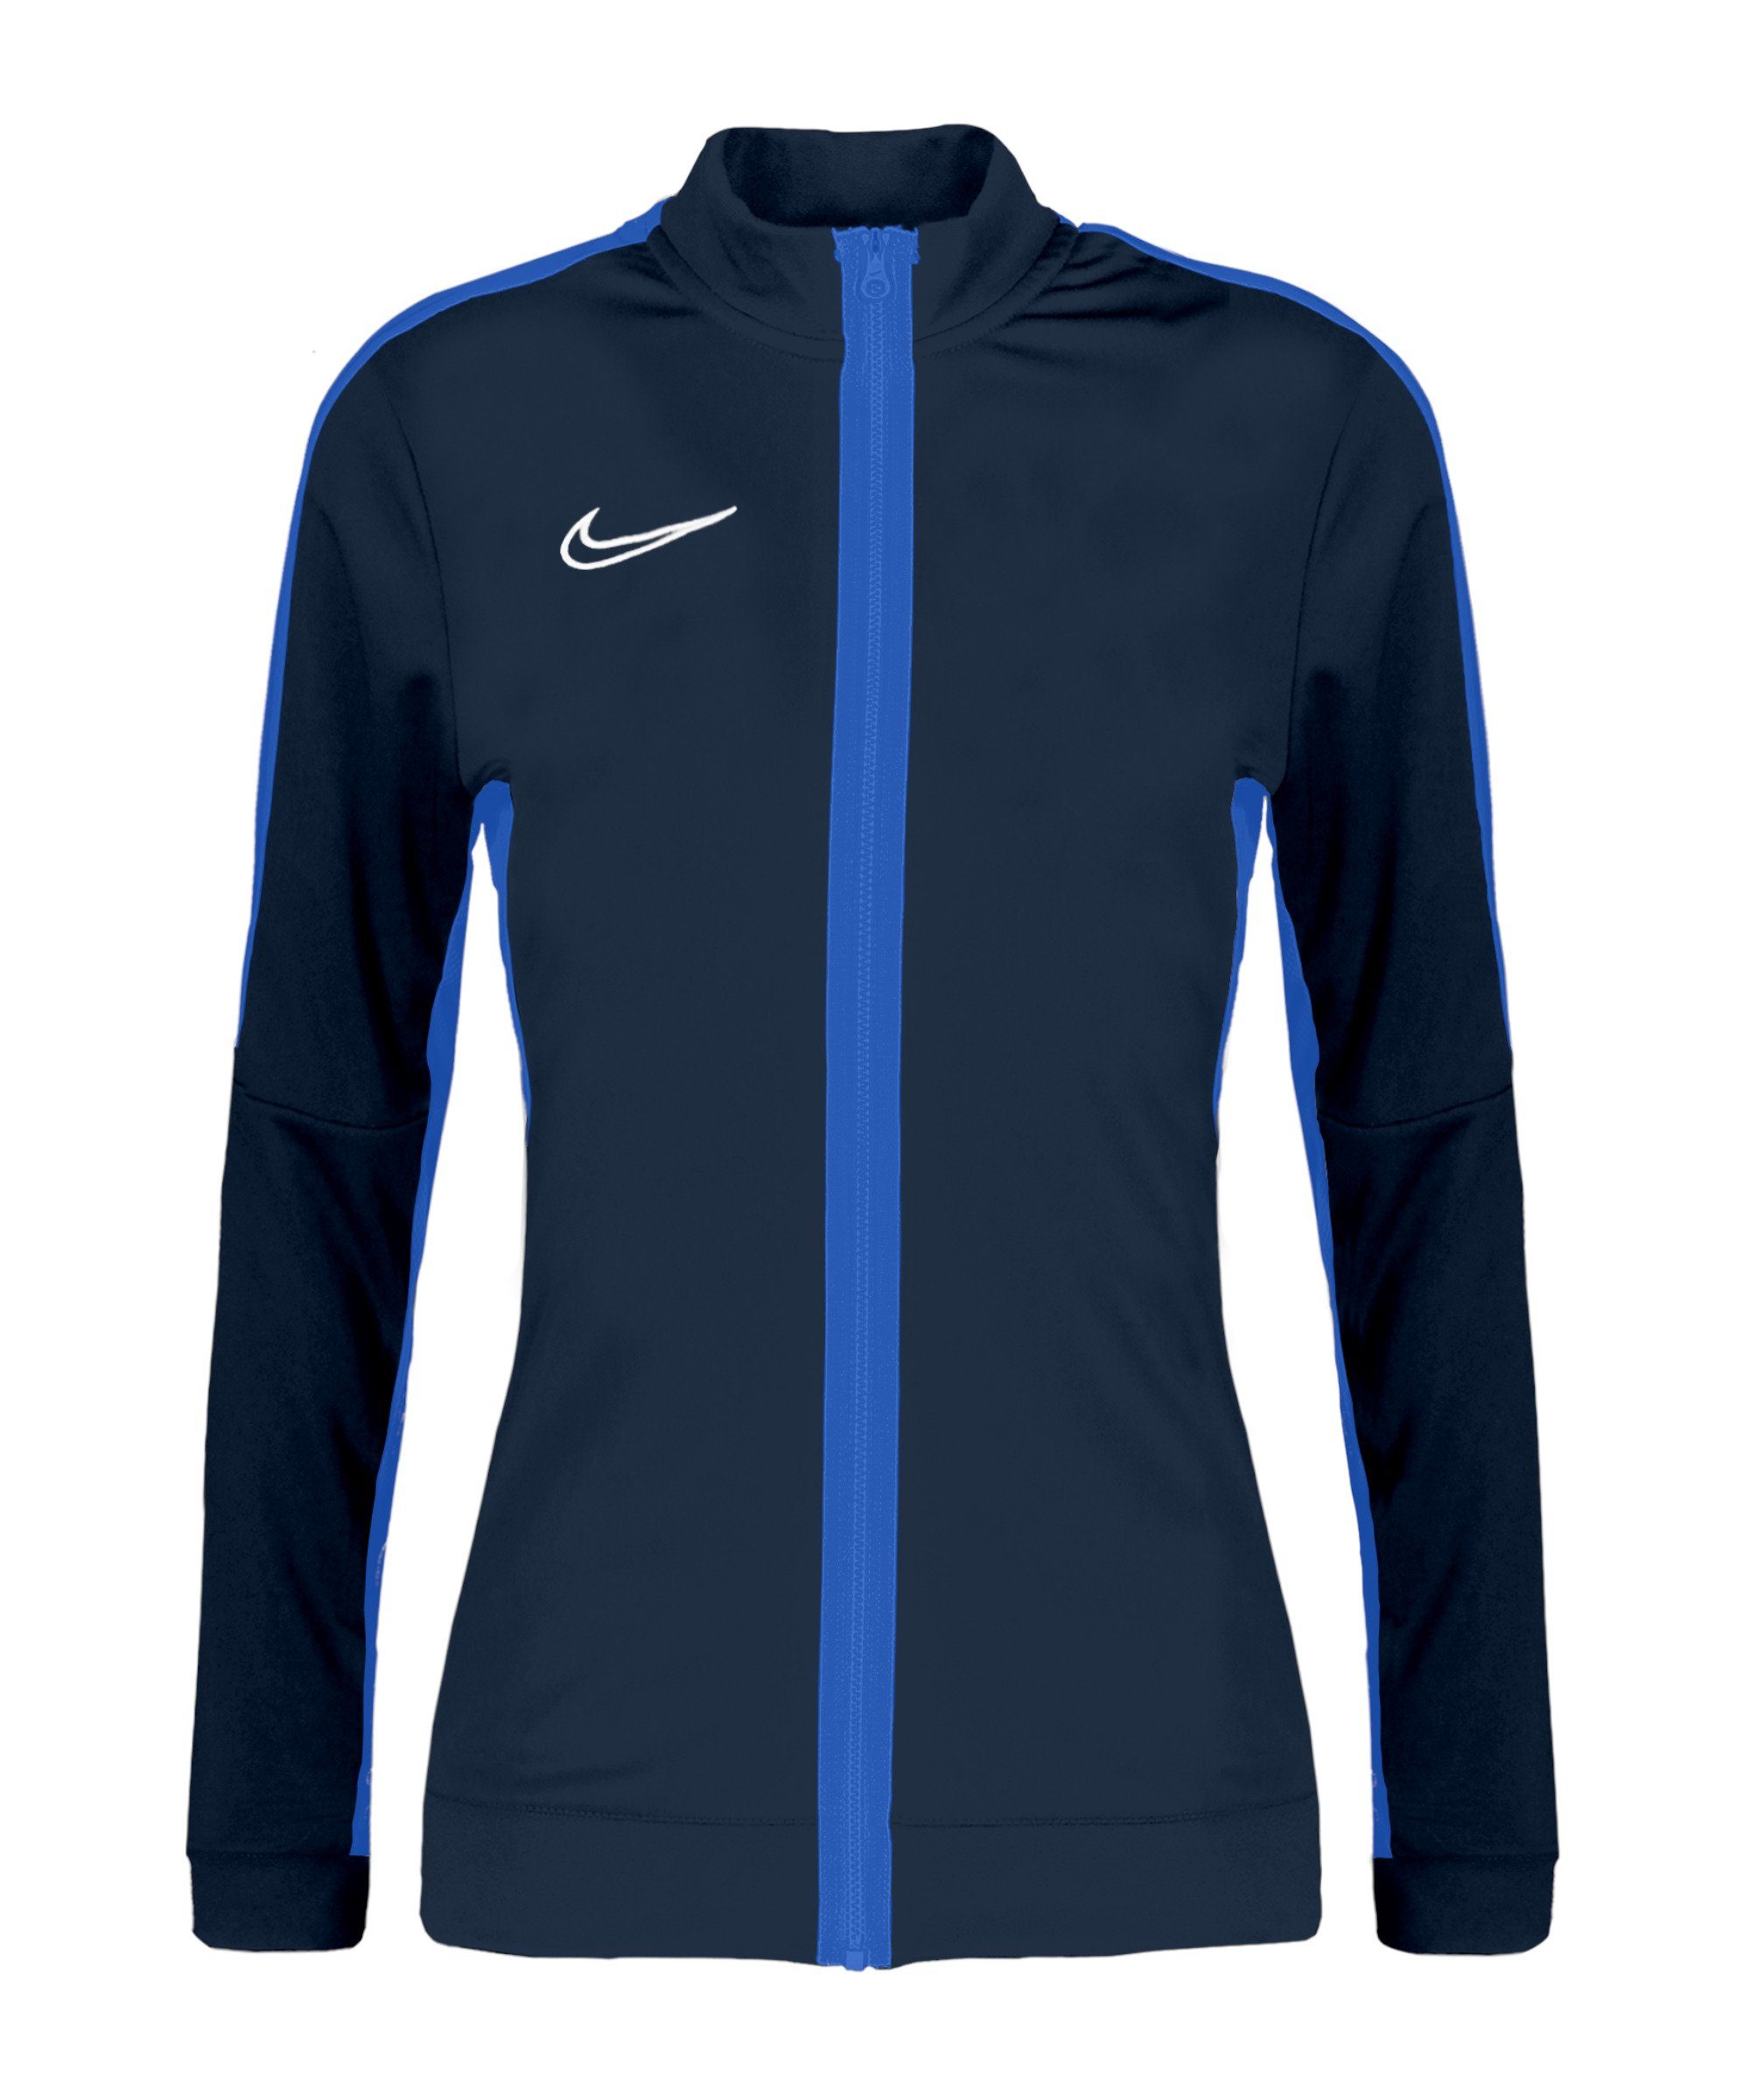 Academy 23 Nike blaublauweiss Trainingsjacke Damen Trainingsjacke